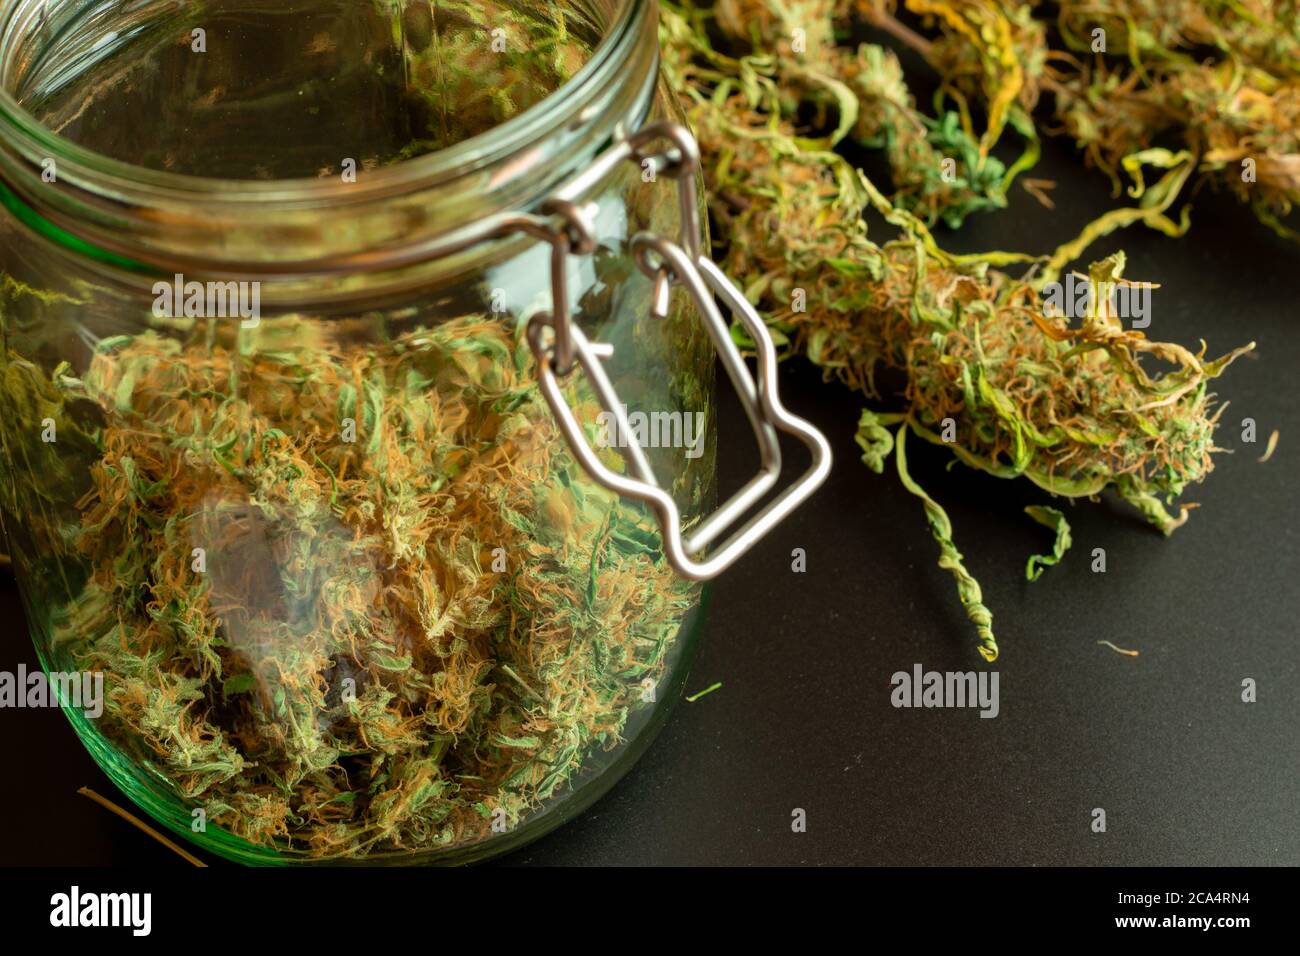 Großes Glas mit trockenen und trimmen Cannabis Knospen und Marihuana-Pflanzen auf dem Hintergrund. Legale medizinische Unkrautindustrie Stockfoto